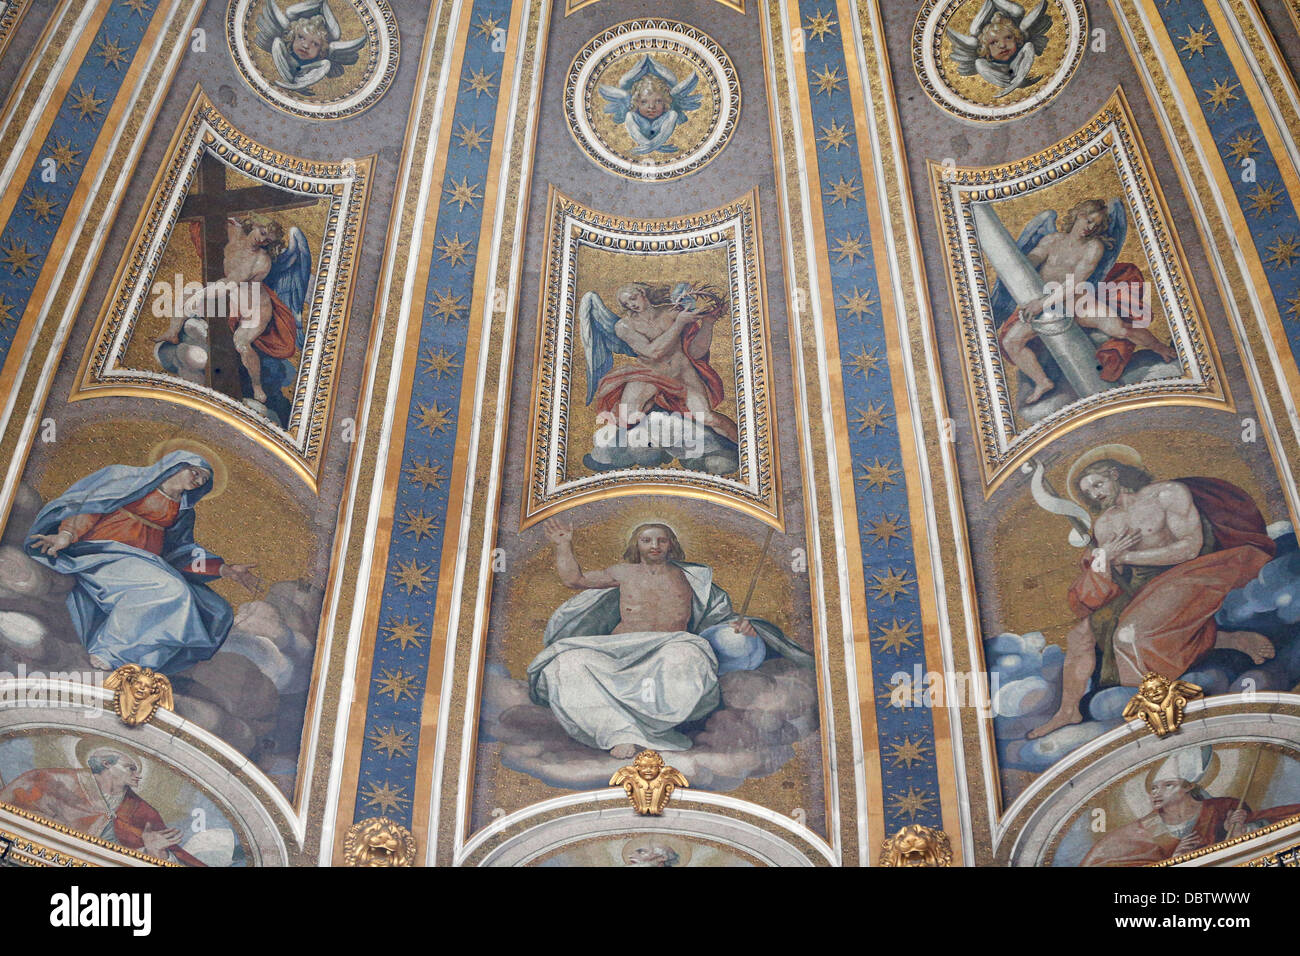 Dettaglio della cupola e gli affreschi nella Basilica di San Pietro, il Vaticano, Roma, Lazio, l'Italia, Europa Foto Stock